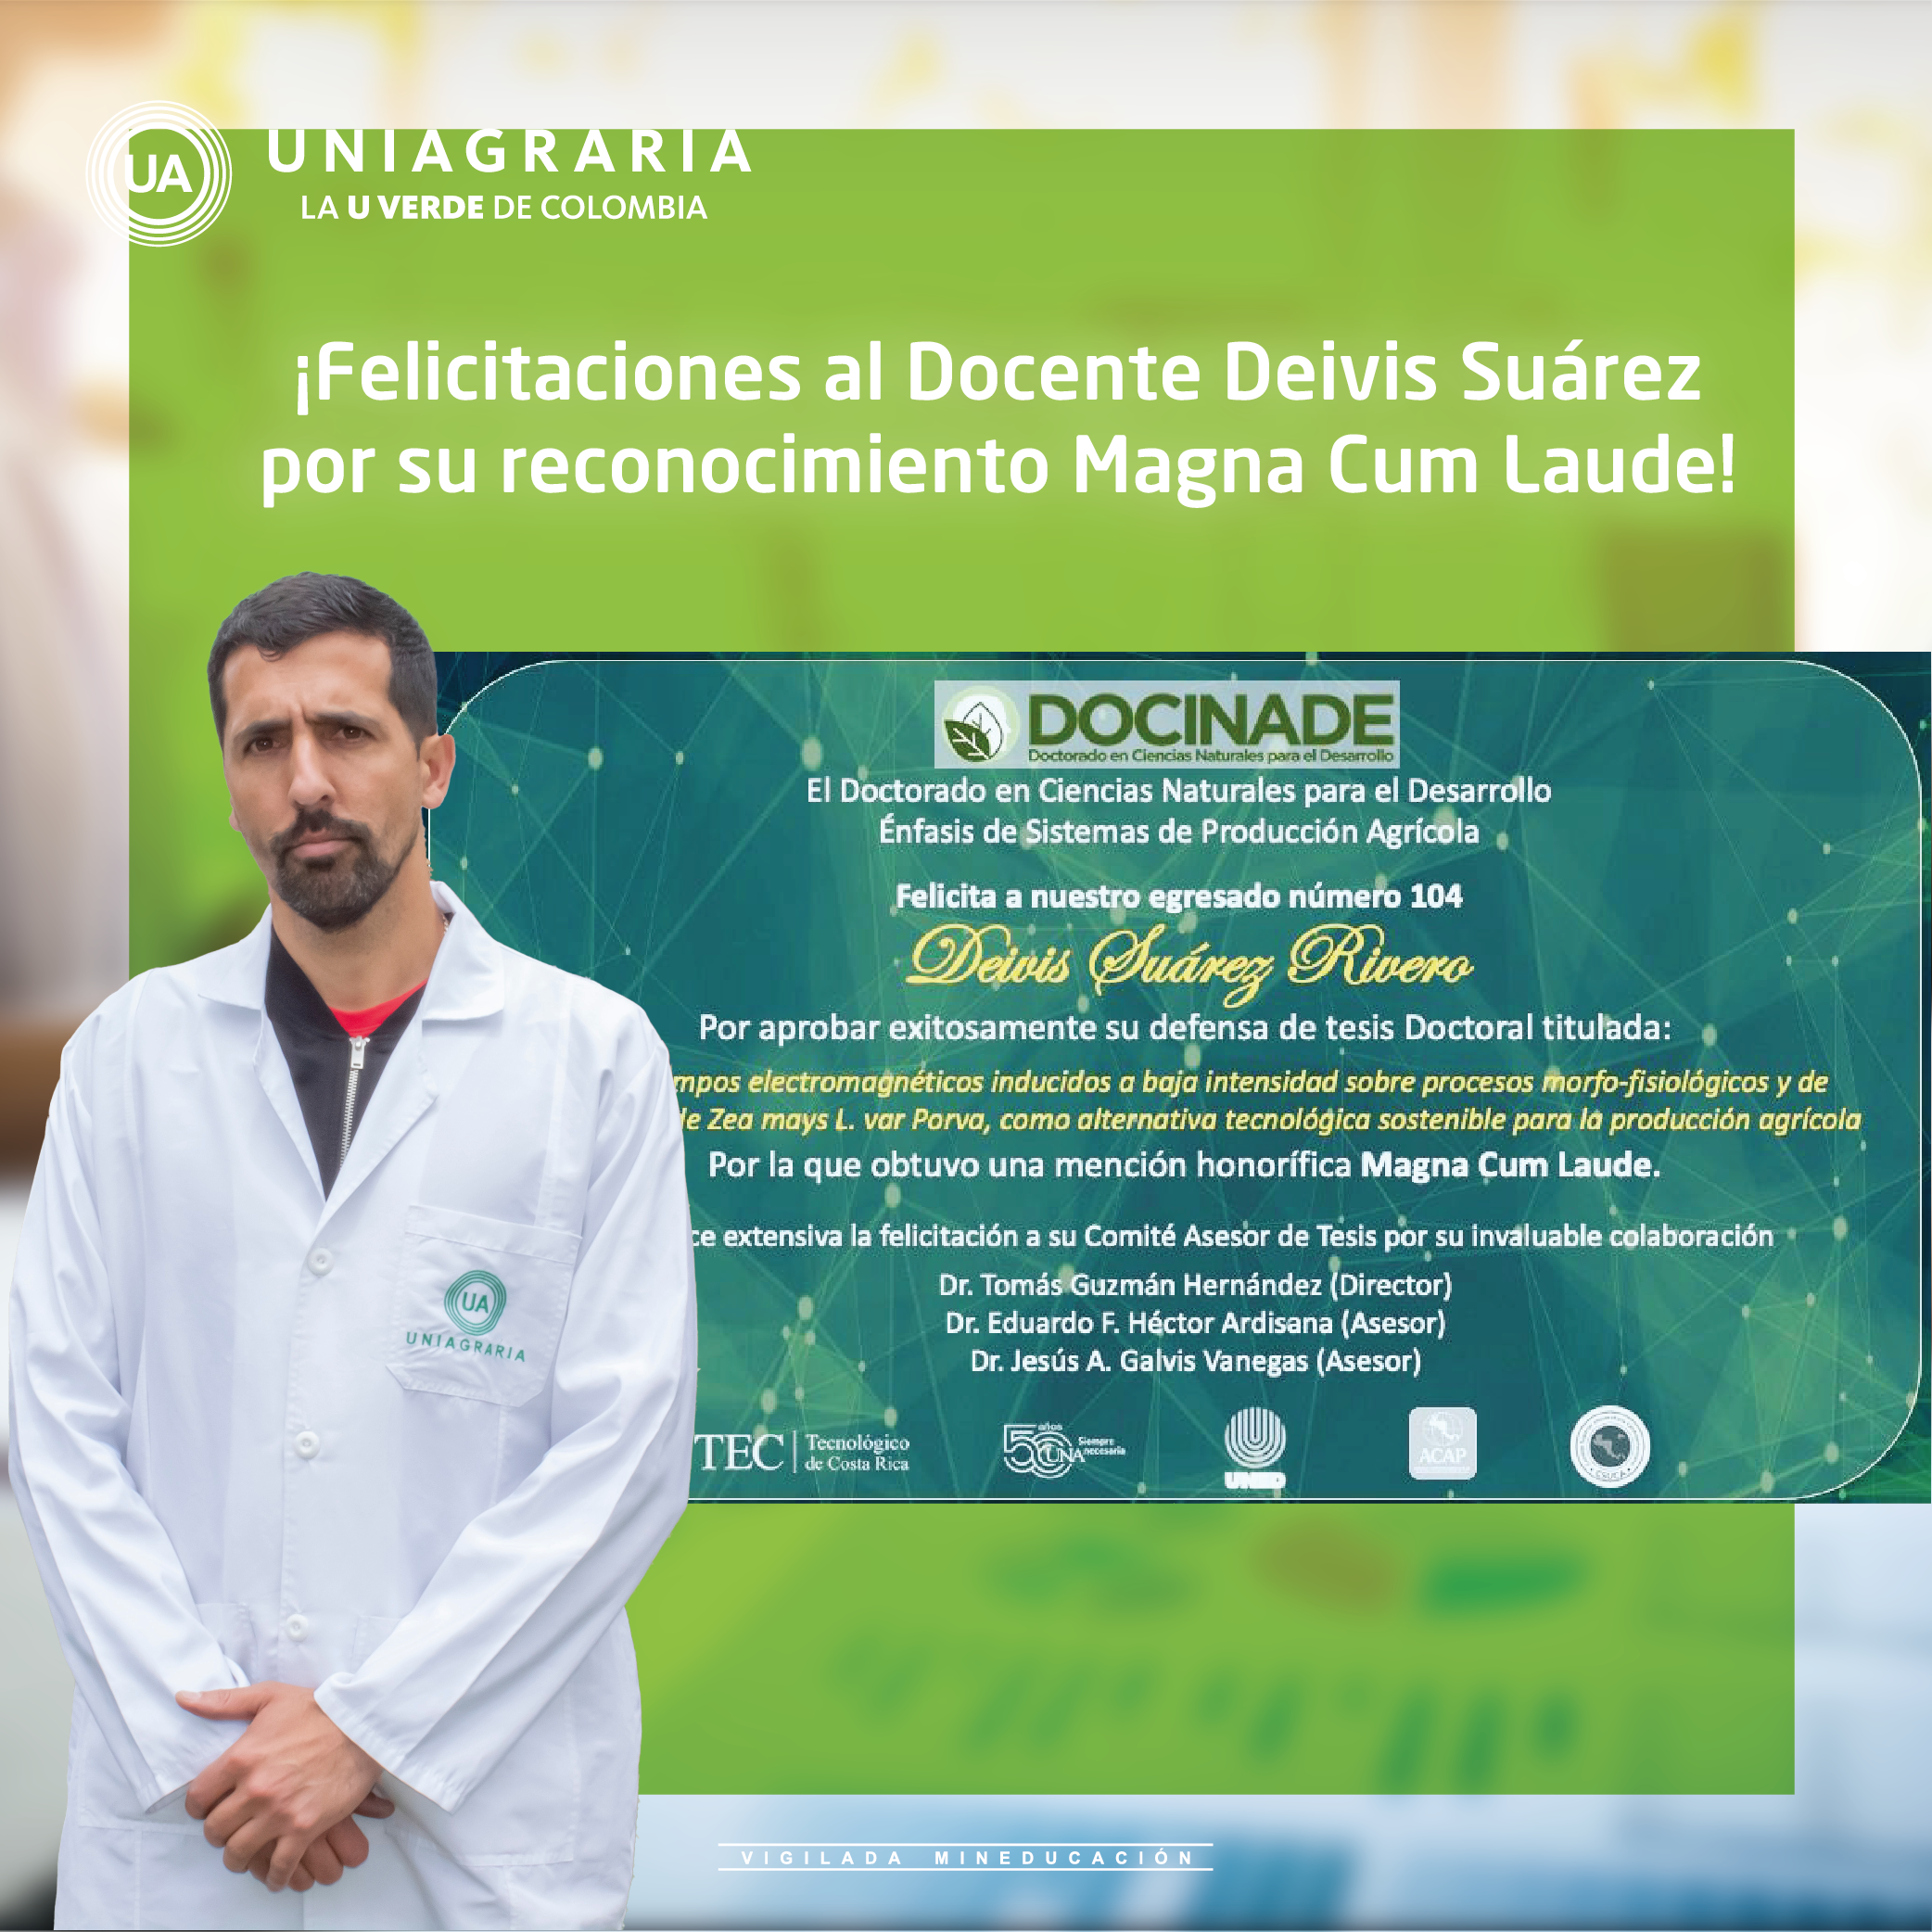 ¡Felicitaciones al Docente Deivis Suárez!